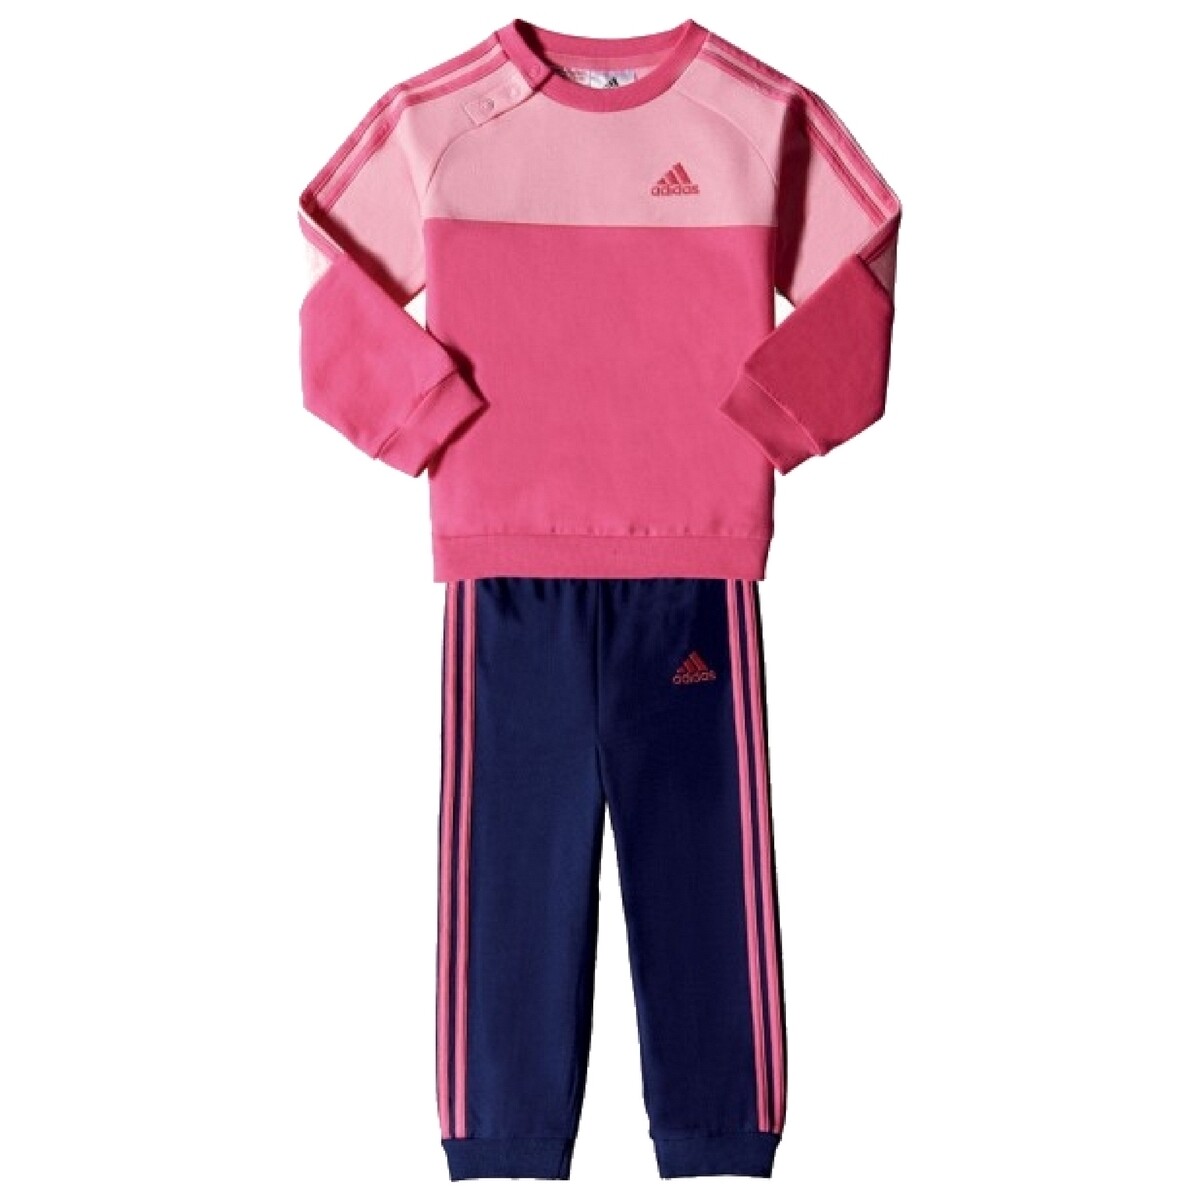 Textil Criança adidas new farm rio sports bra top female S21417 Rosa